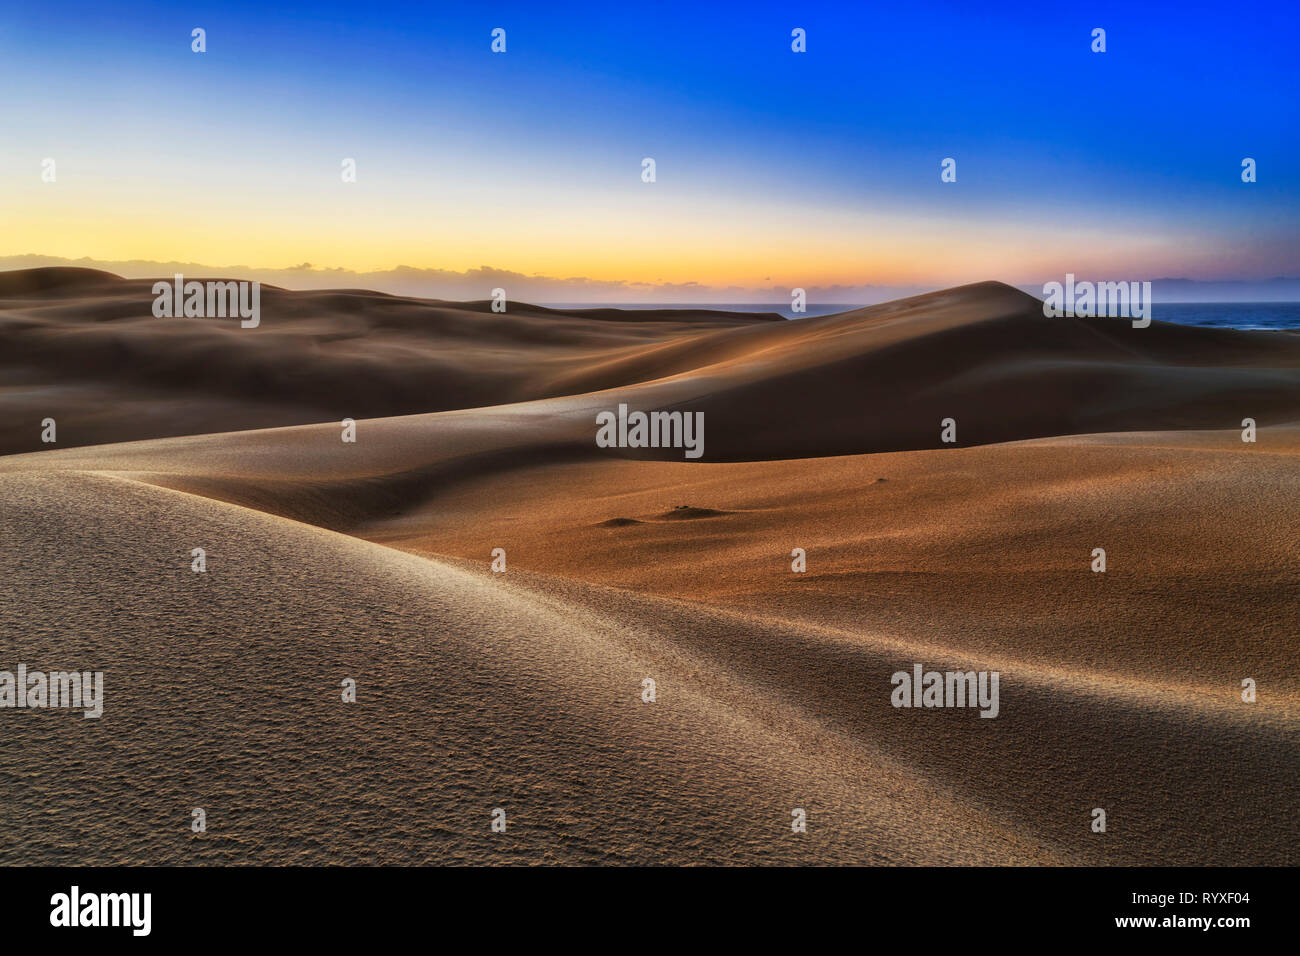 Leblos endlosen Sanddünen der Wüste am Ufer des Pazifischen Ozeans - Stockton Strand. frühen Sonnenaufgang morgen Licht in kalten, blauen Himmel scheint auf unberührte Surf Stockfoto